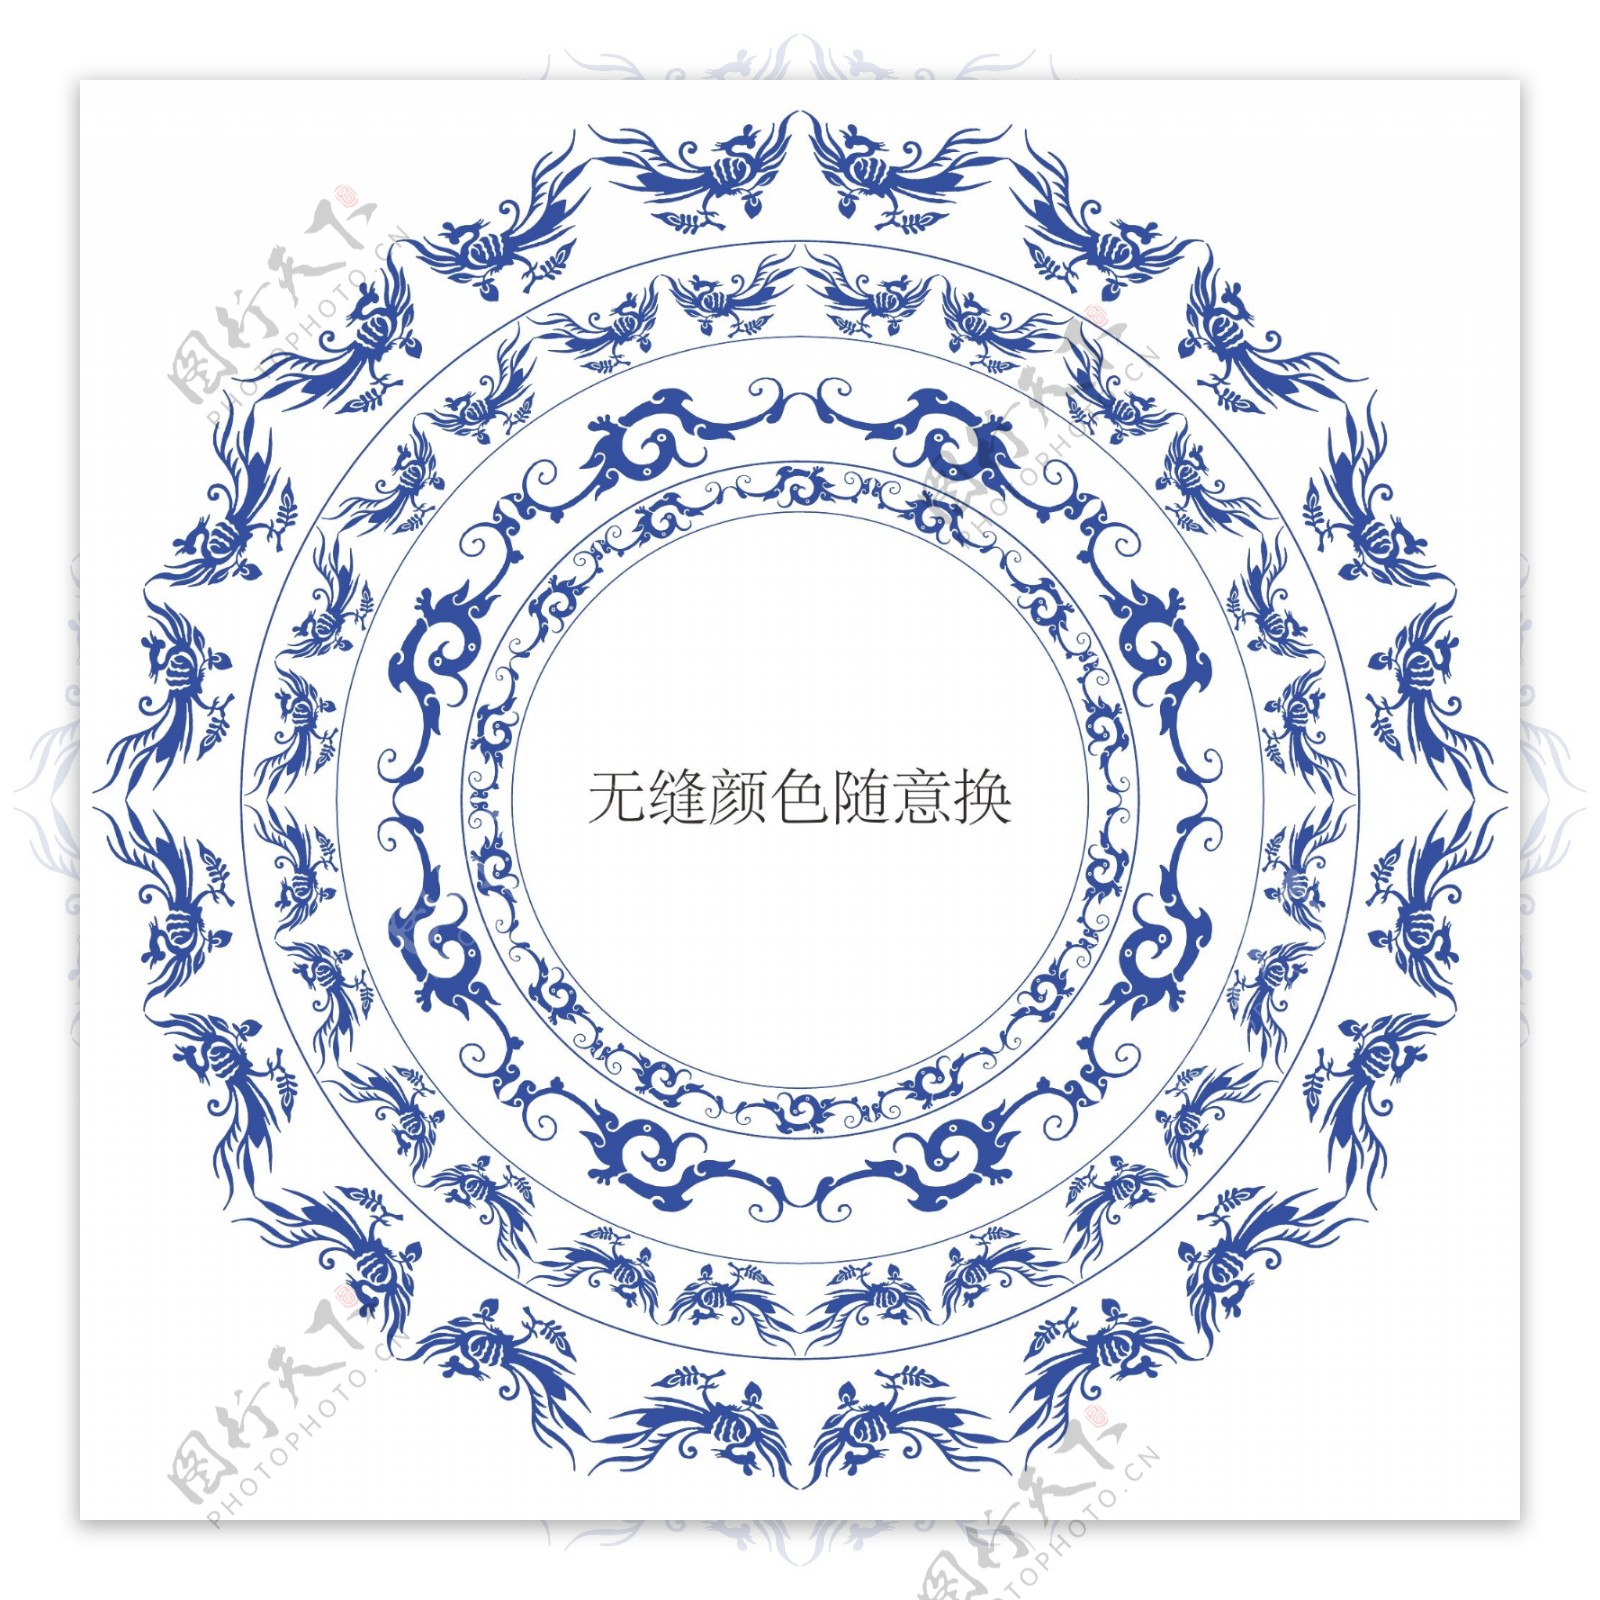 2种中国传统龙凤纹无缝边框